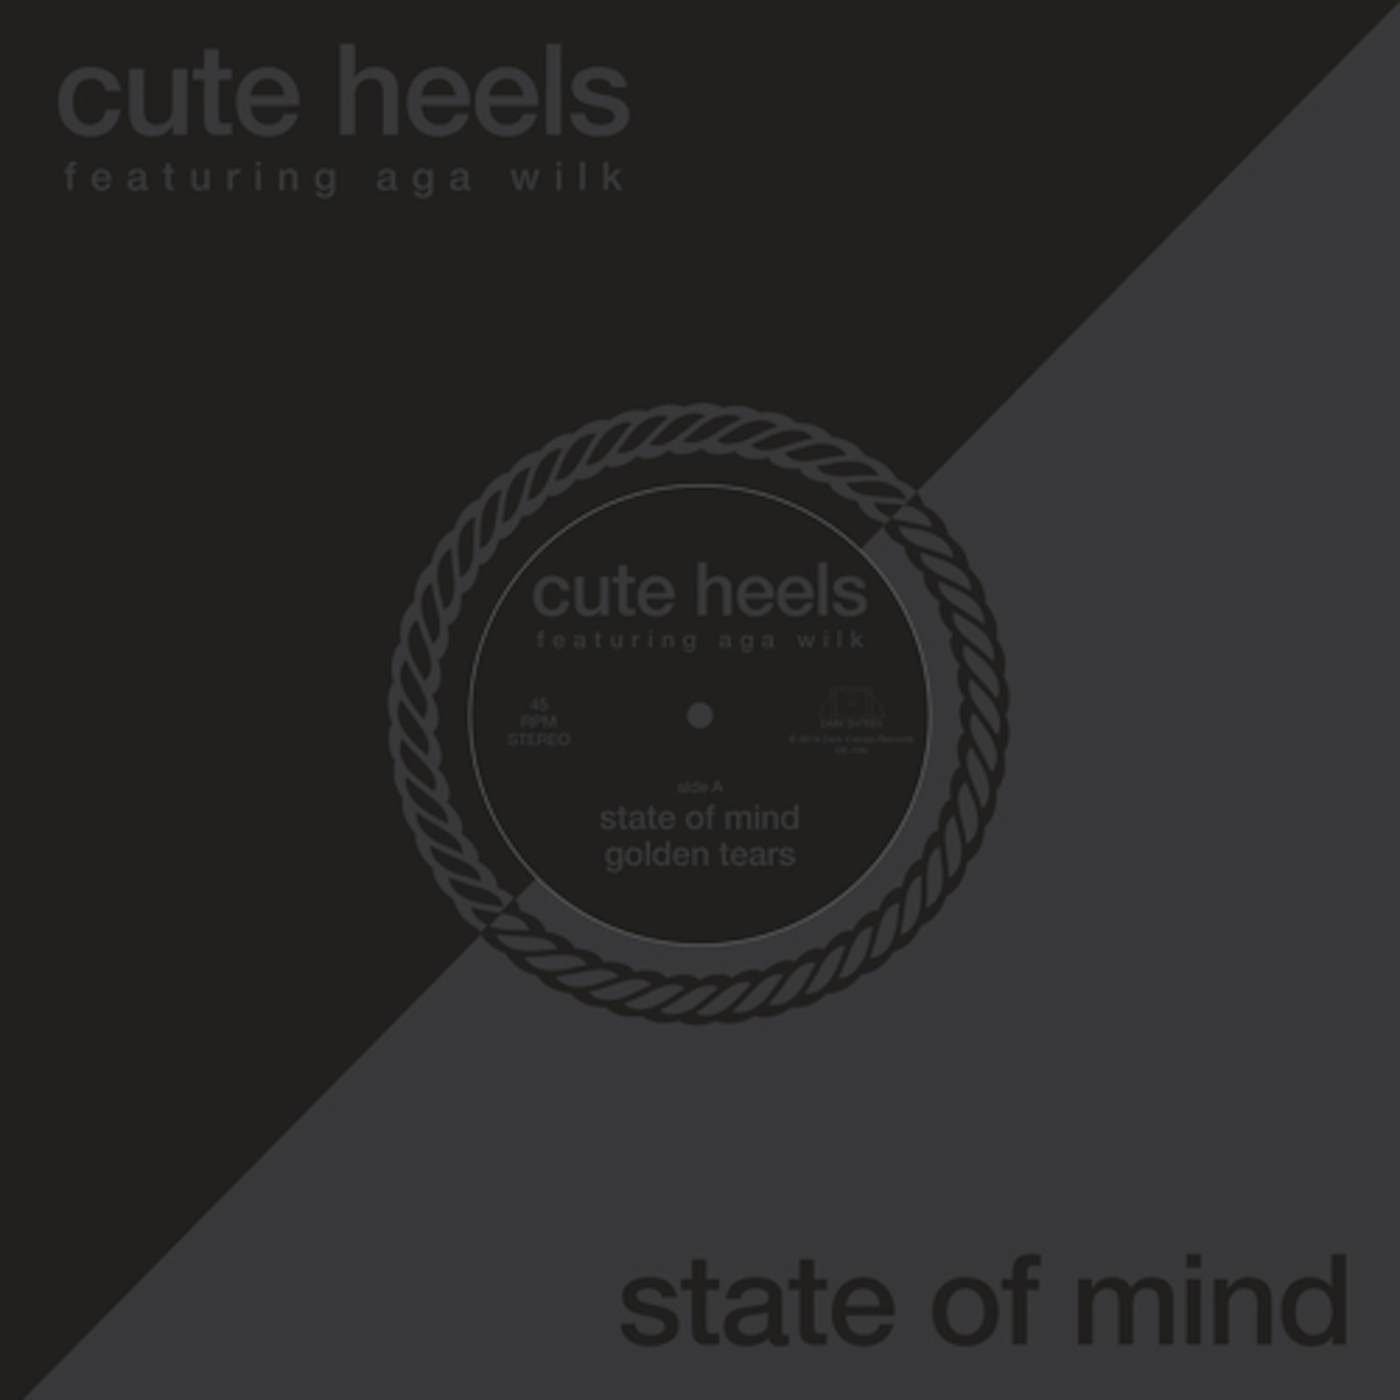 Cute Heels & Aga Wilk STATE OF MIND Vinyl Record